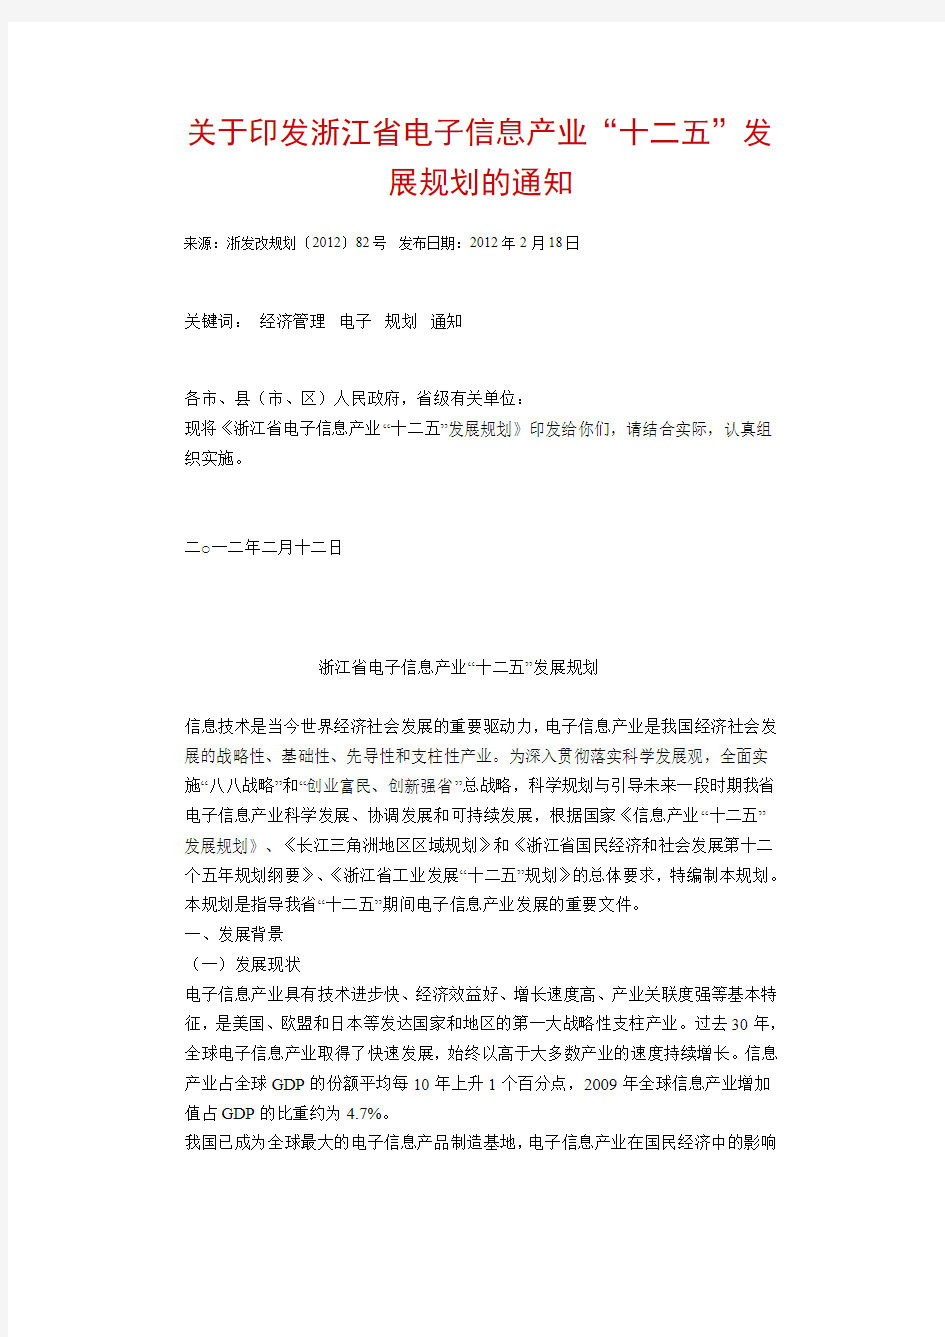 浙江省电子信息产业“十二五”规划(2011)